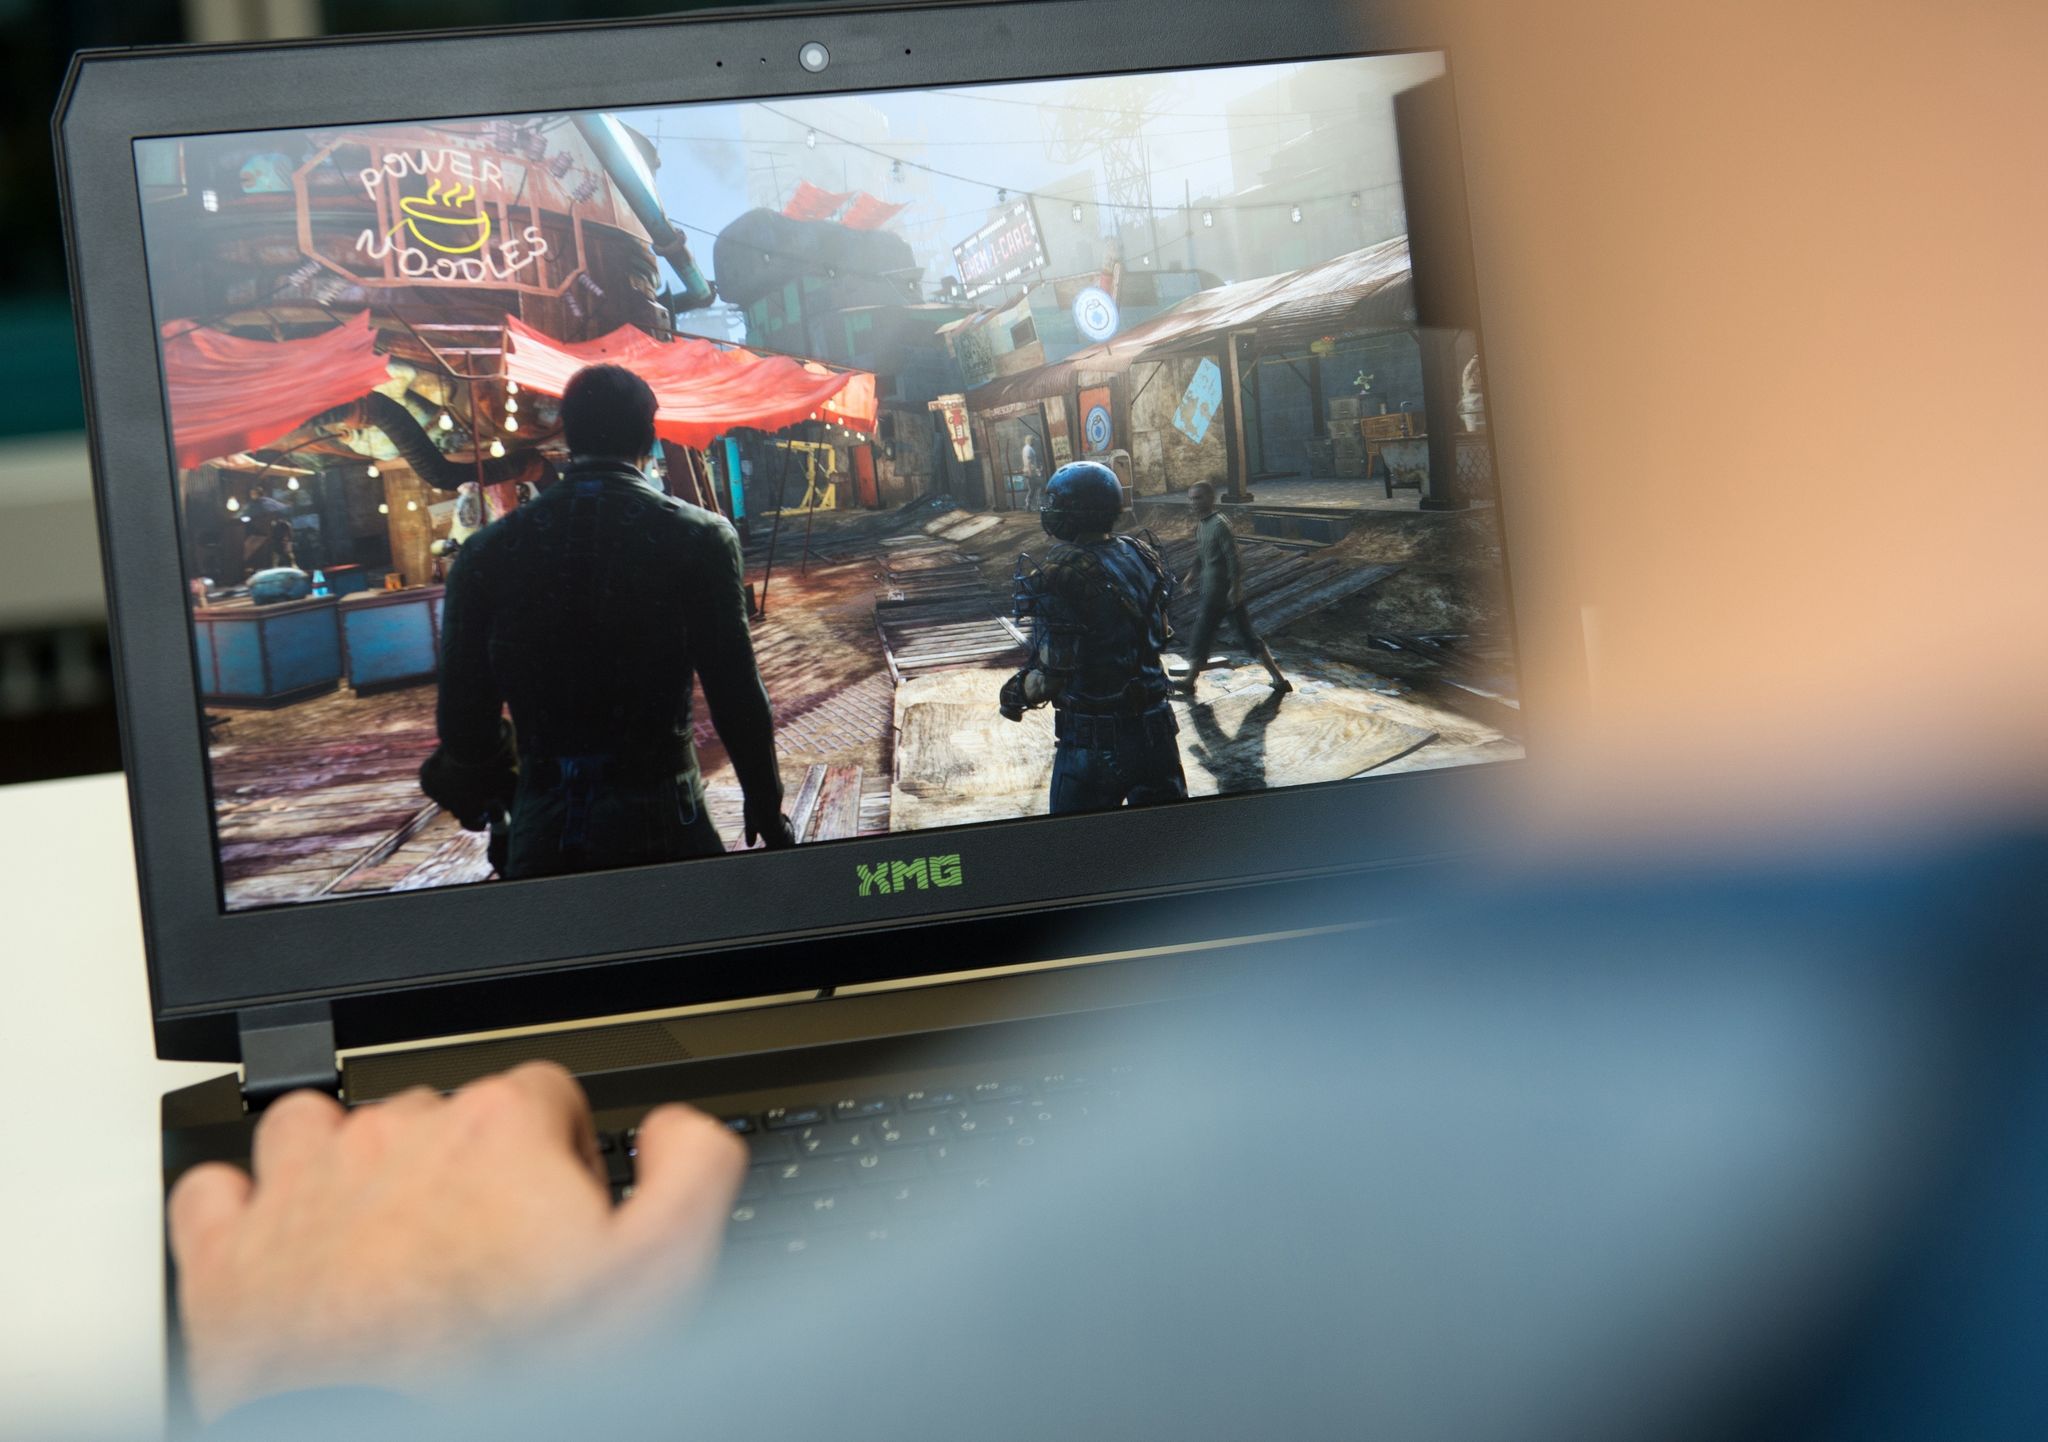 Abwarten und besser spielen: Über Prime Gaming stehen nun mehrere Spiele und Updates der Fallout-Reihe kostenlos zur Verfügung.